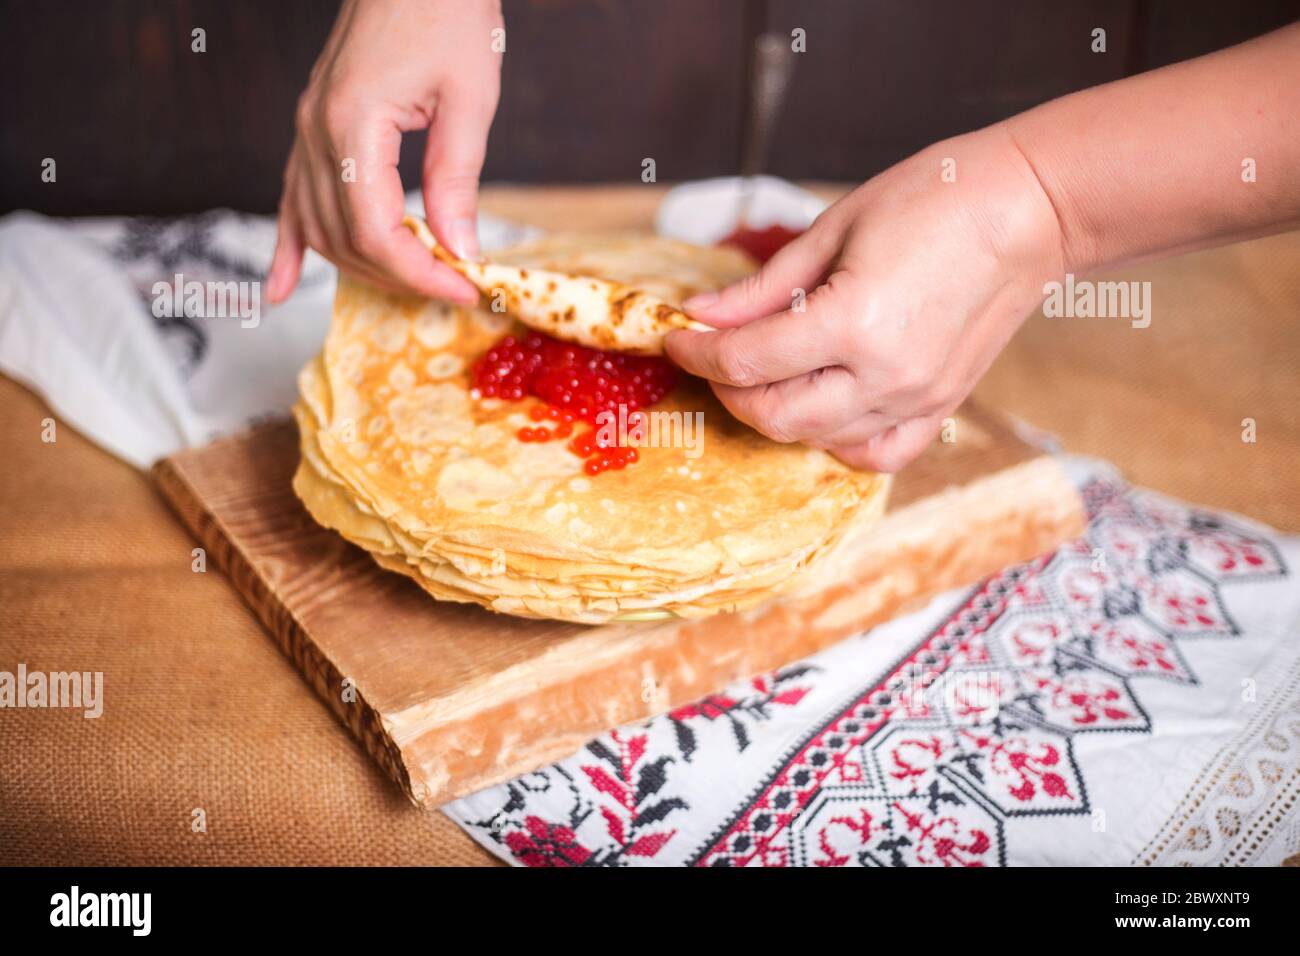 Une femme enveloppe le caviar rouge dans une crêpe chaude dans la cuisine, les mains se ferment. Banque D'Images